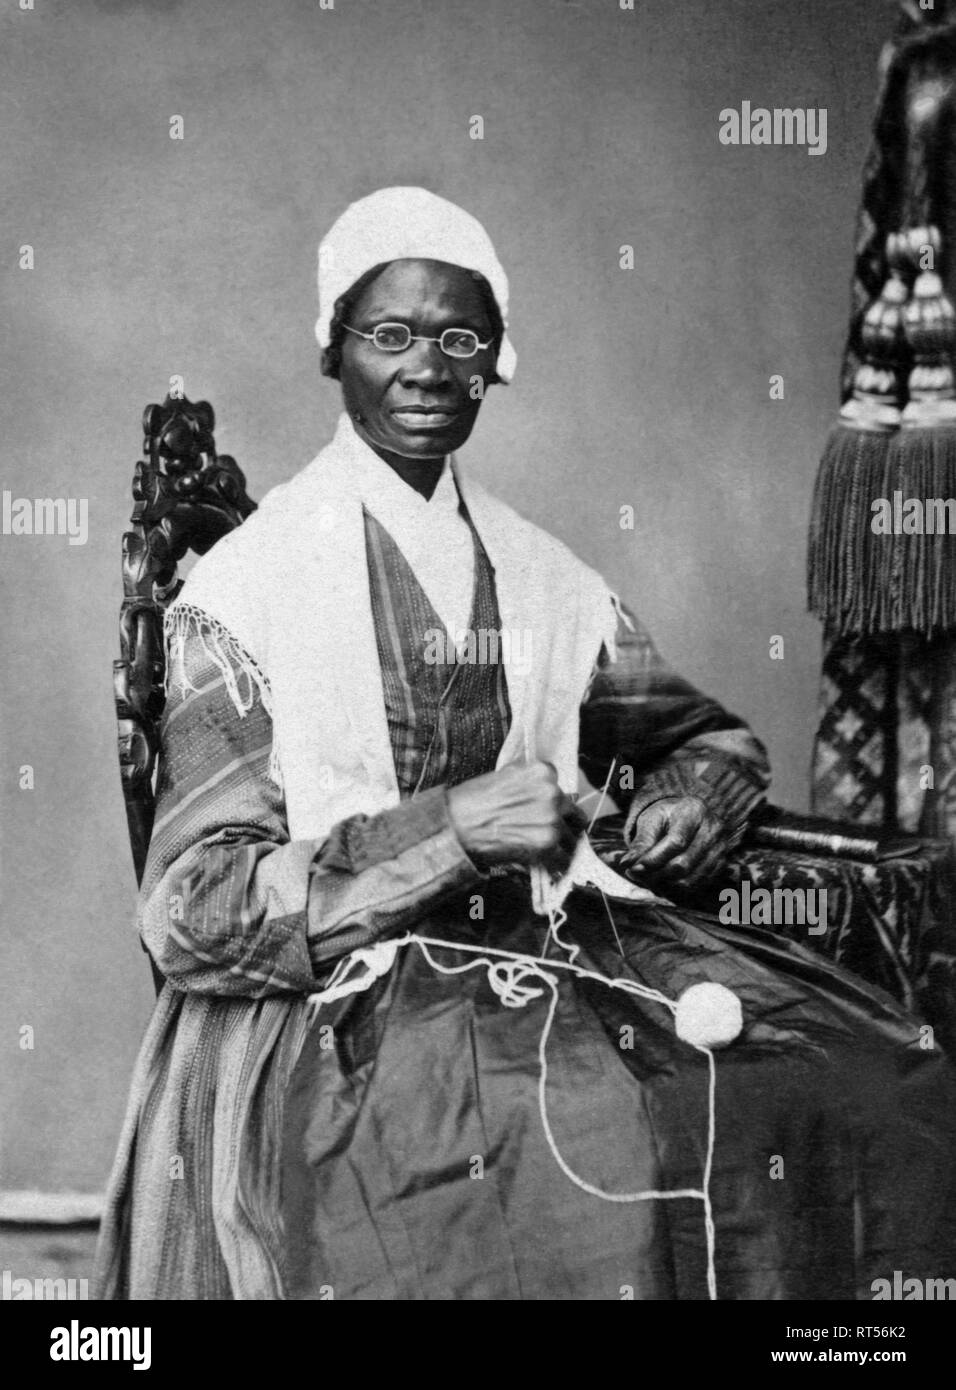 Portrait von fremdling Wahrheit, einen Afrikaner, die die Todesstrafe abgeschafft haben und Frauenrechtlerin. Stockfoto